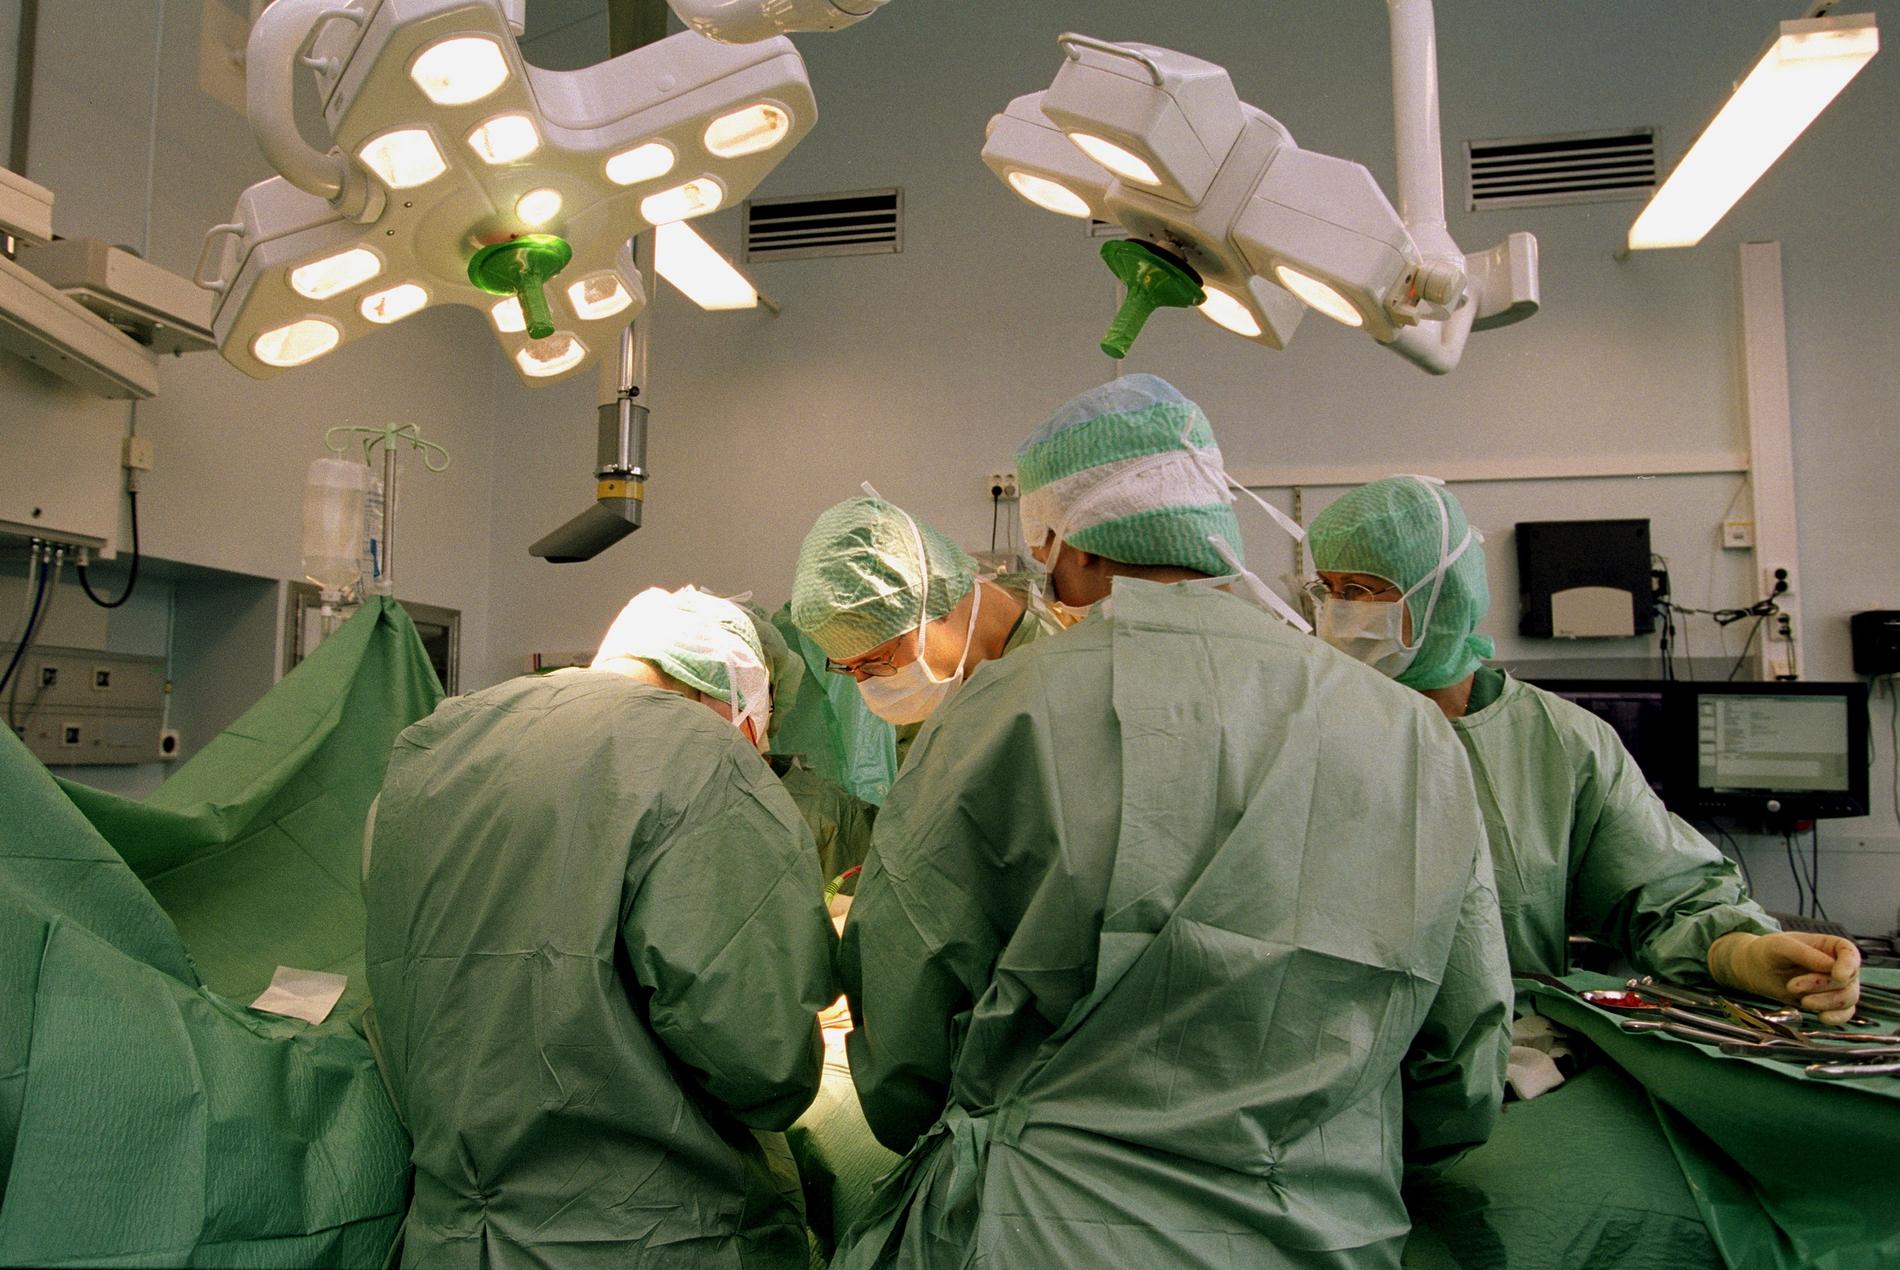 200 patienter på Blekingesjukhuset opereras utan att sövas. Arkivbild.